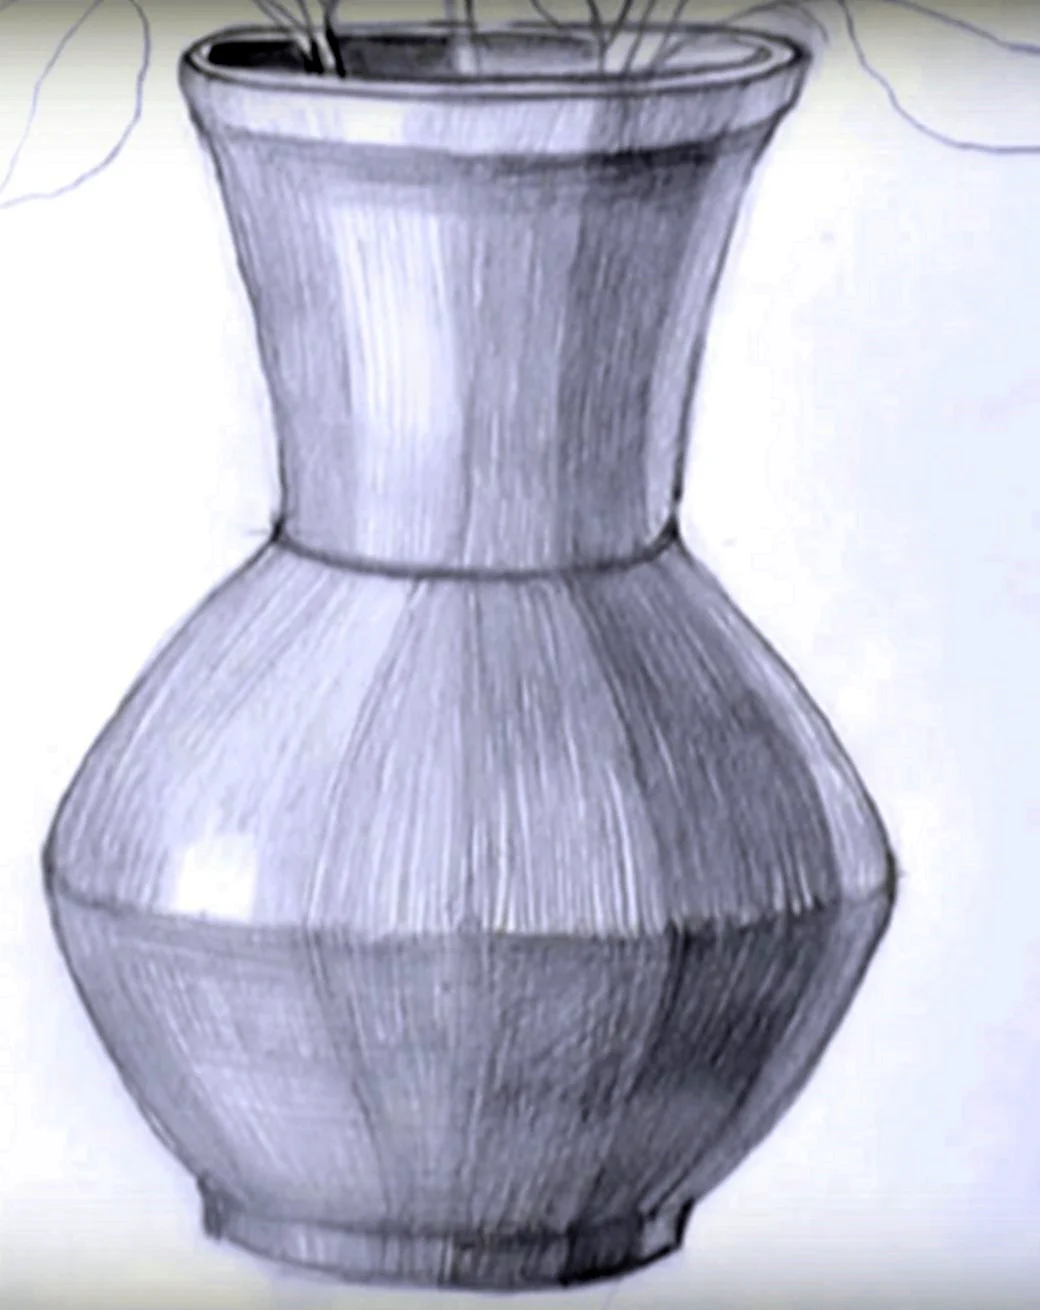 Рисунок вазы